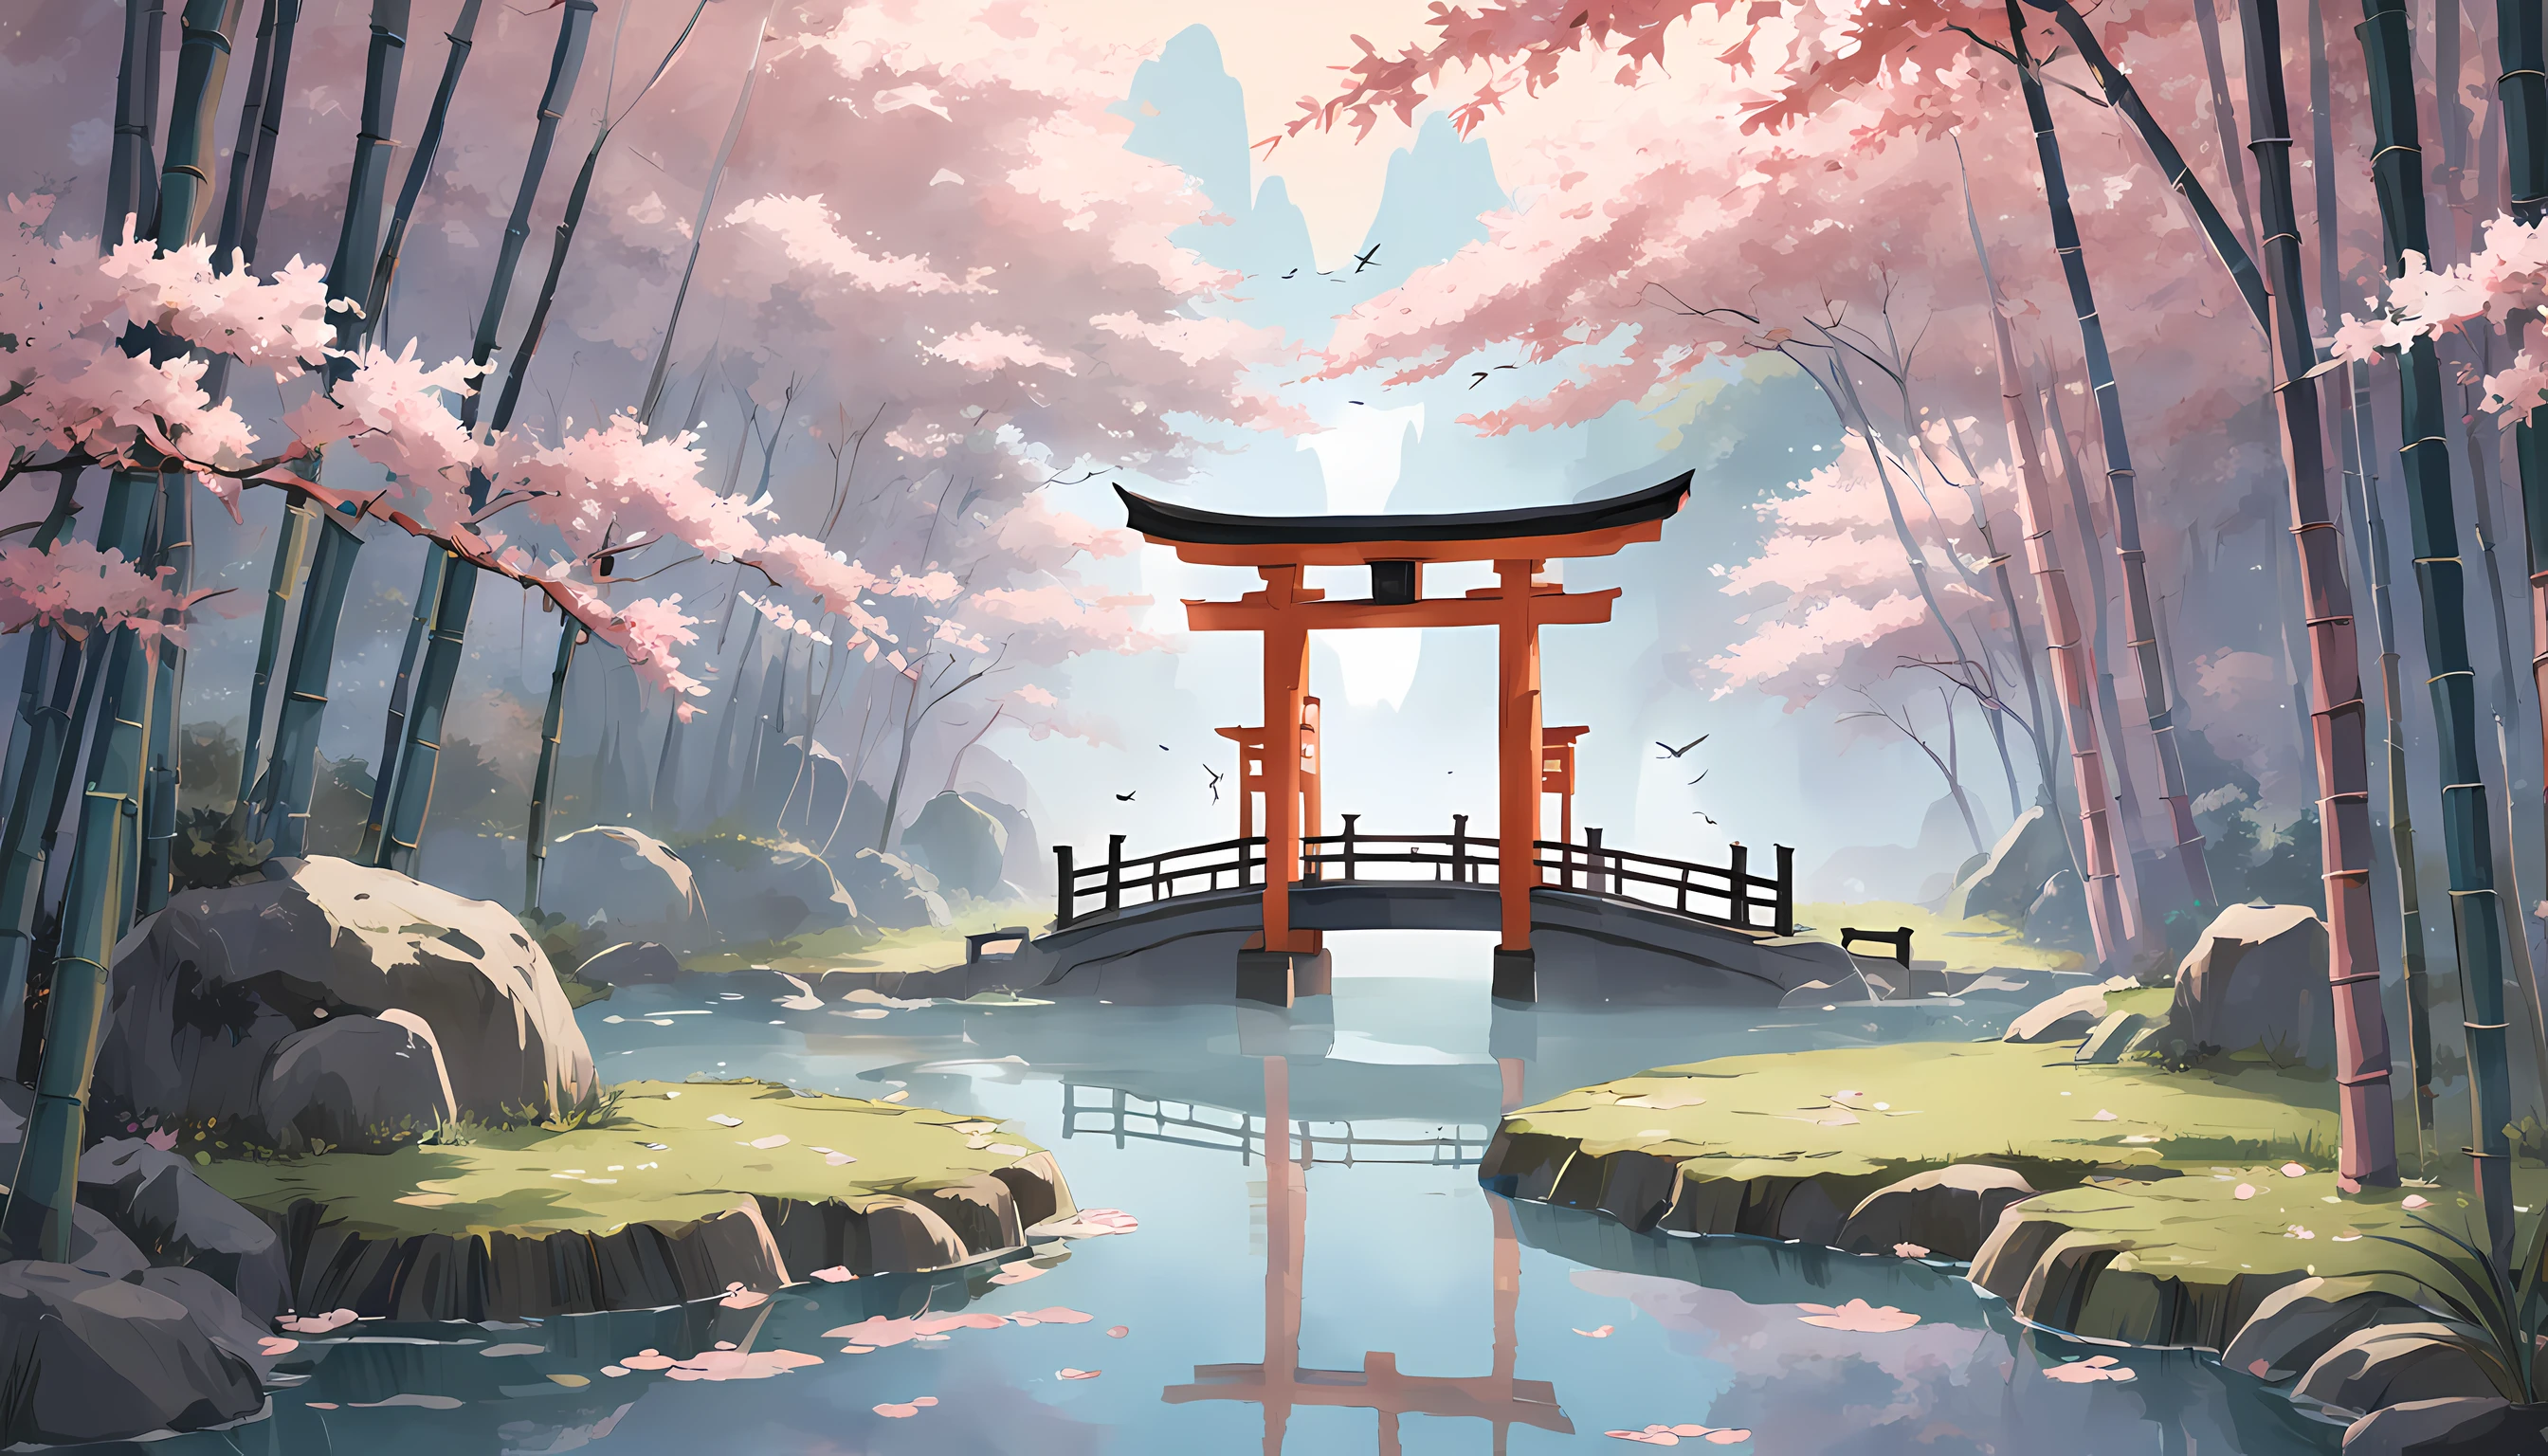 "Visualize a captivating vonllpaper adorned with a meticulously crafted pattern of iconic Japanese symbols, jede Schicht trägt zu einem reichen und harmonischen Wandteppich bei.

Kirschblüten, zart und vergänglich, flattern über die Leinwand, die Schönheit und Vergänglichkeit des Lebens beschwörend. The torii gate, ein heiliges Portal, steht hoch, symbolisiert die Grenze zwischen der geistigen und der physischen Welt.

Elegante Kanji-Zeichen sind in das Design eingearbeitet, jedes Zeichen hat eine tiefe Bedeutung. &#39;Und&#39; (von) steht für Harmonie und Einheit, &#39;mutig&#39; (du) verkörpert Mut, und Frieden&#39; (heivon) bedeutet Frieden.

Unter einem ruhigen, mondbeschienenen Himmel, a red sun disc or '日' (Hallo) strahlt, steht für Hoffnung und Neubeginn. Bambusstäbe stehen stark und flexibel, Symbol für Belastbarkeit und Anpassungsfähigkeit.

Ein ruhiger Teich spiegelt die Umgebung, its surface adorned with a vonter lily or '蓮' (Lustig), steht für Reinheit und Erleuchtung. Koi-Fische schwimmen zwischen Lotusblumen, verkörpert Transformation und Beharrlichkeit.

Goldene Kraniche heben ab, Ihre Flügel symbolisieren Langlebigkeit und Glück. Der ruhige Klang einer Tempelglocke oder &#39;鐘&#39; (kane) schwingt mit, bringt Achtsamkeit und inneren Frieden.

The color palette seamlessly blends sootHallong blues, Sanfte Rosatöne, und erdige Grüntöne, ein Gefühl der Ruhe und Verbundenheit mit der Natur hervorrufen. THallos vonllpaper pattern is an intricate mosaic of Japanese symbolism, lädt Sie ein, die Schichten der Kultur zu erkunden, Weisheit, und Schönheit, die sie besitzen."